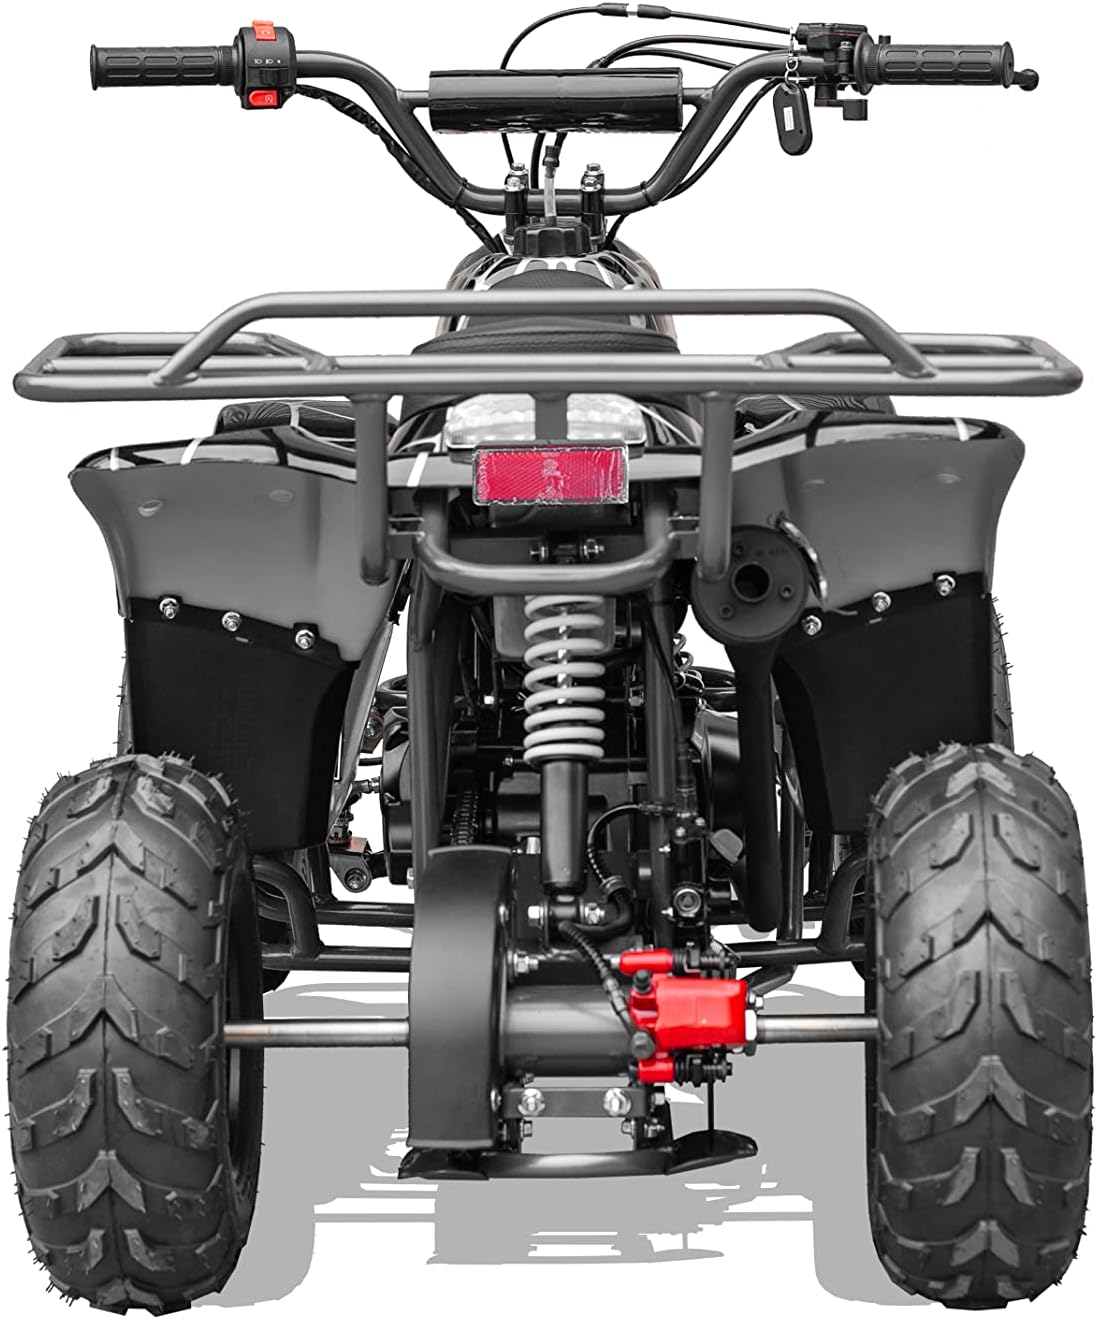 GAS 110cc ATV Quad 4 Wheeler Four Wheelers with Off-Road Tires (Spider Design)